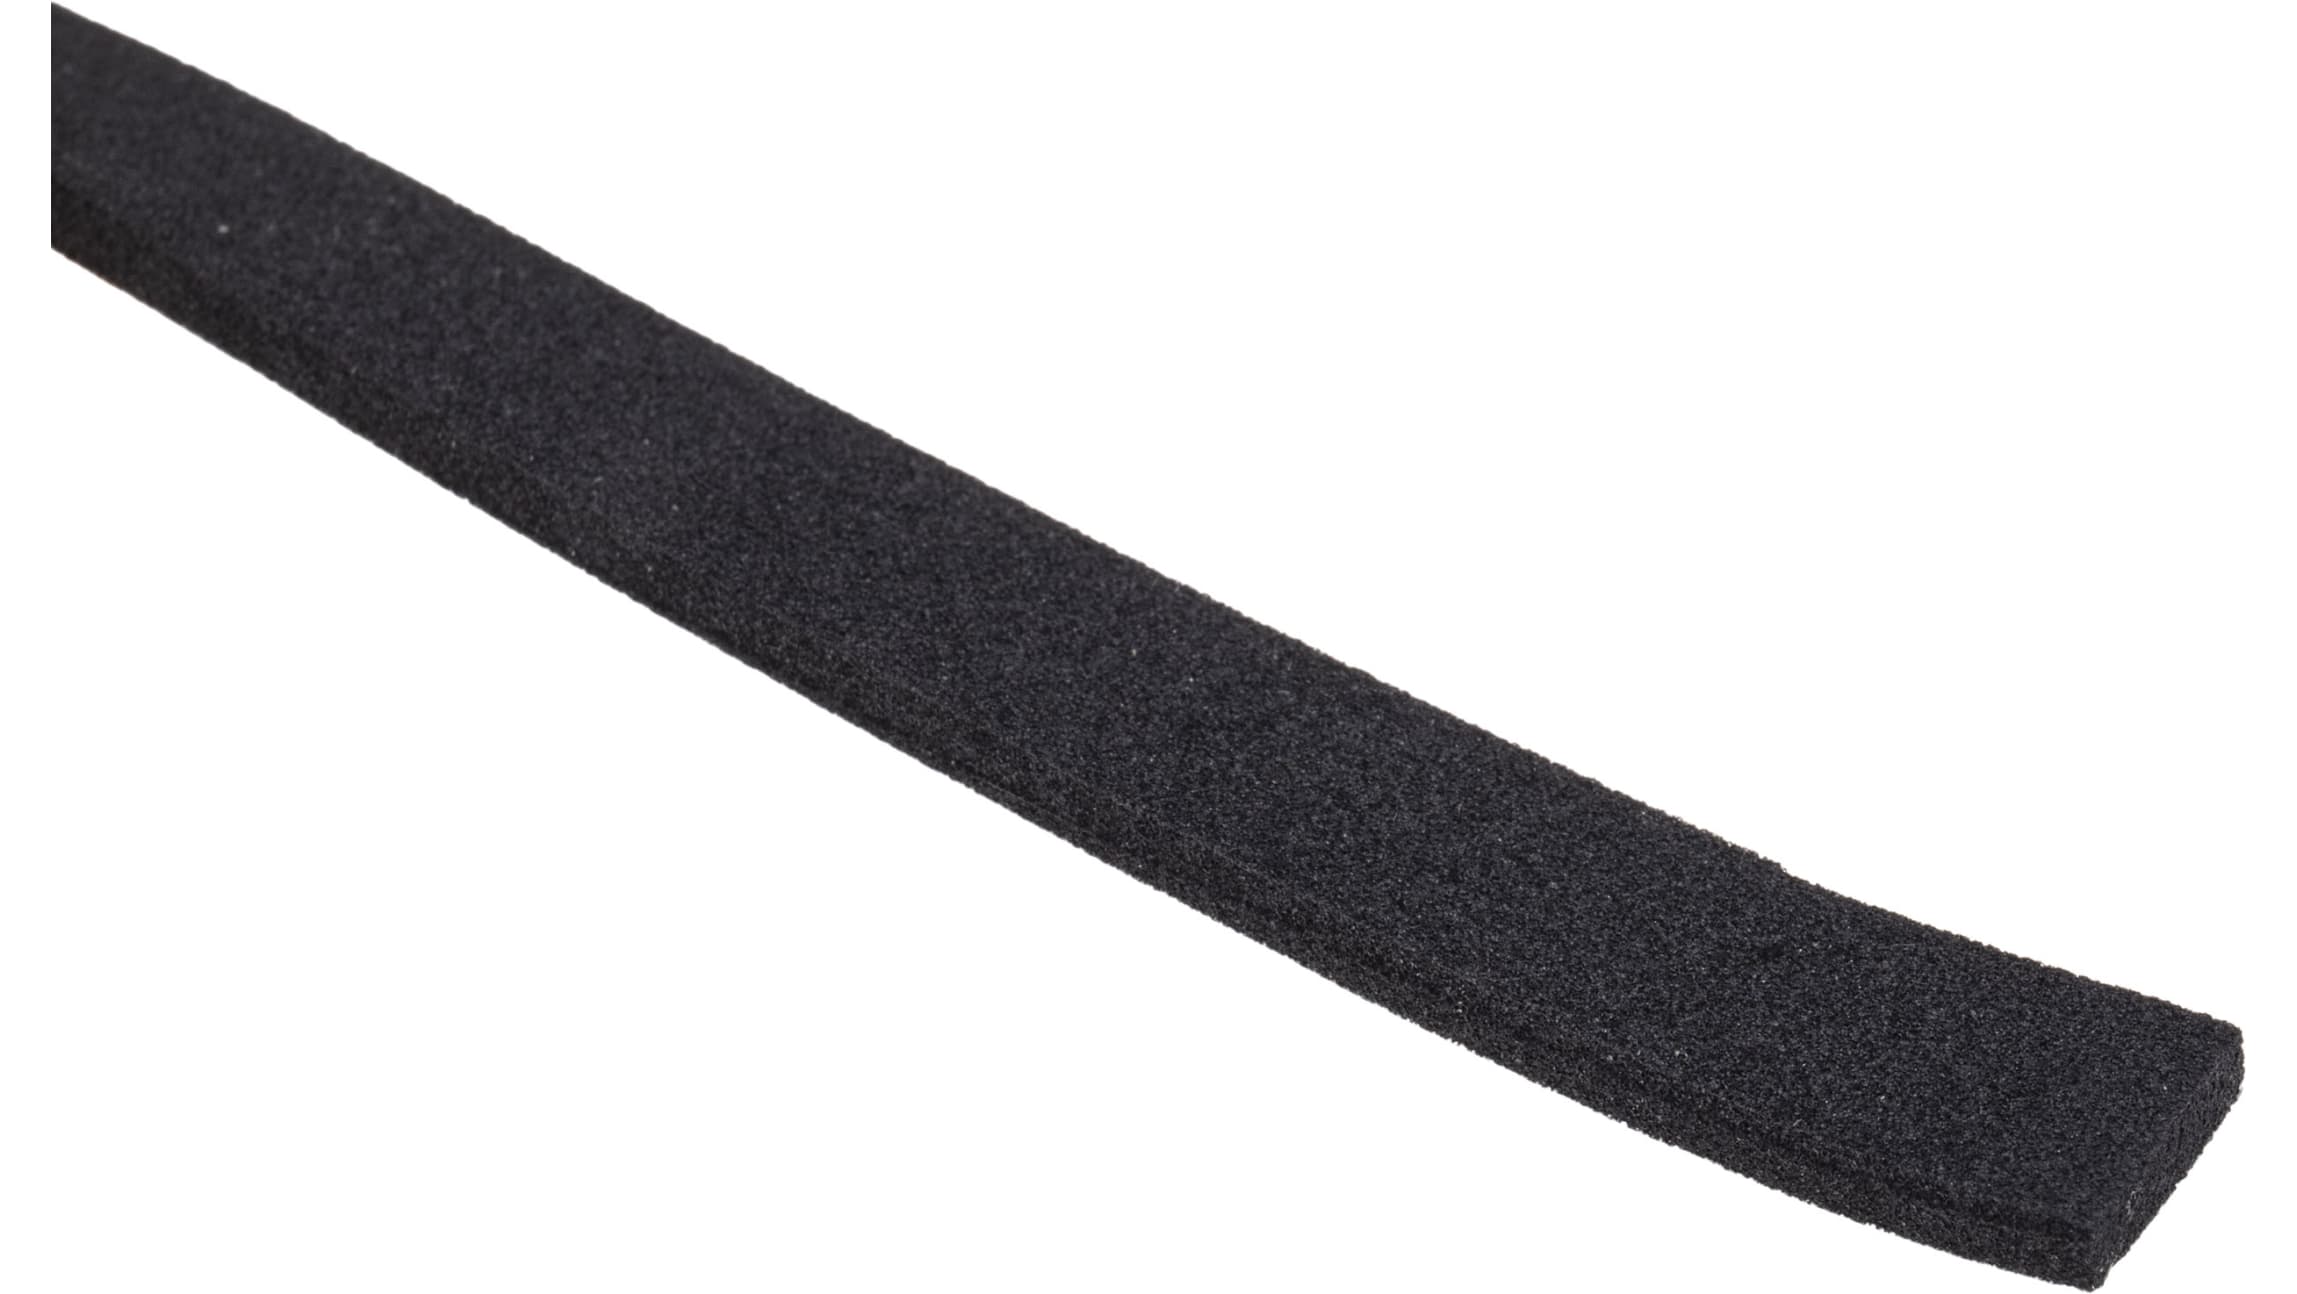 Mousse noire adhésive caoutchouc epdm 20x2mm longueur 10m - Espace